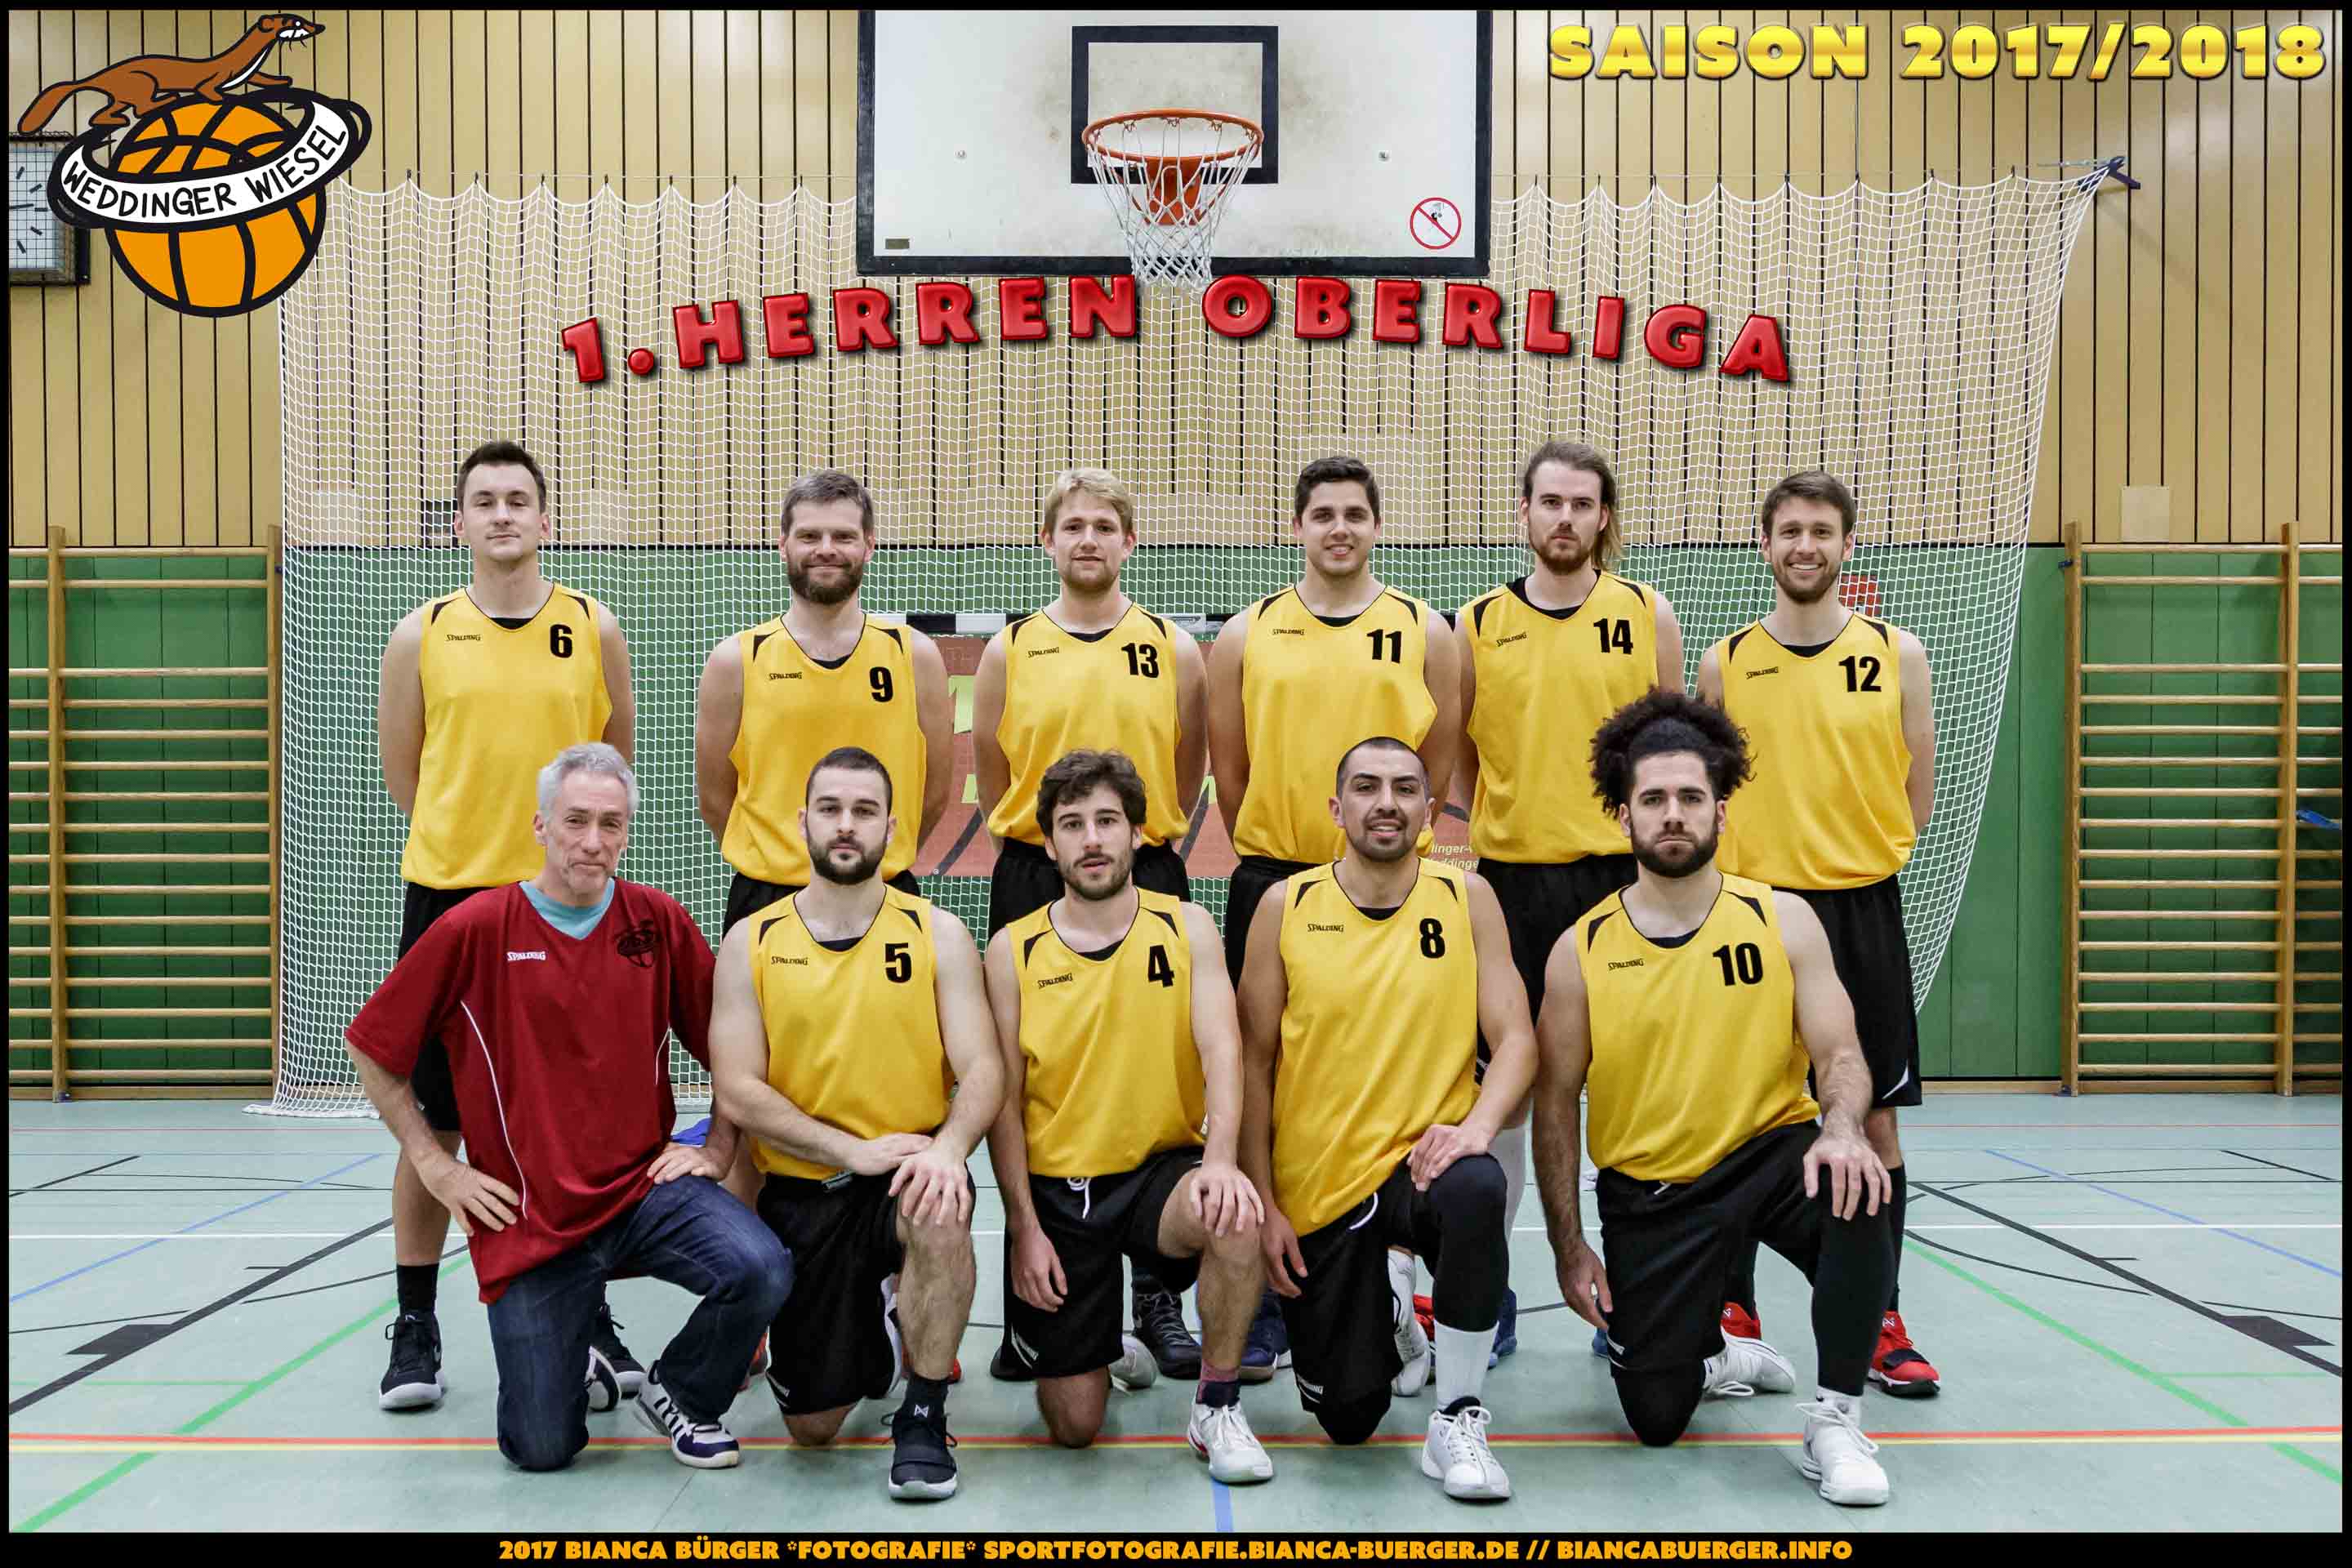 Team Herren-1 der Weddinger Wiesel - Saison 2017/2018